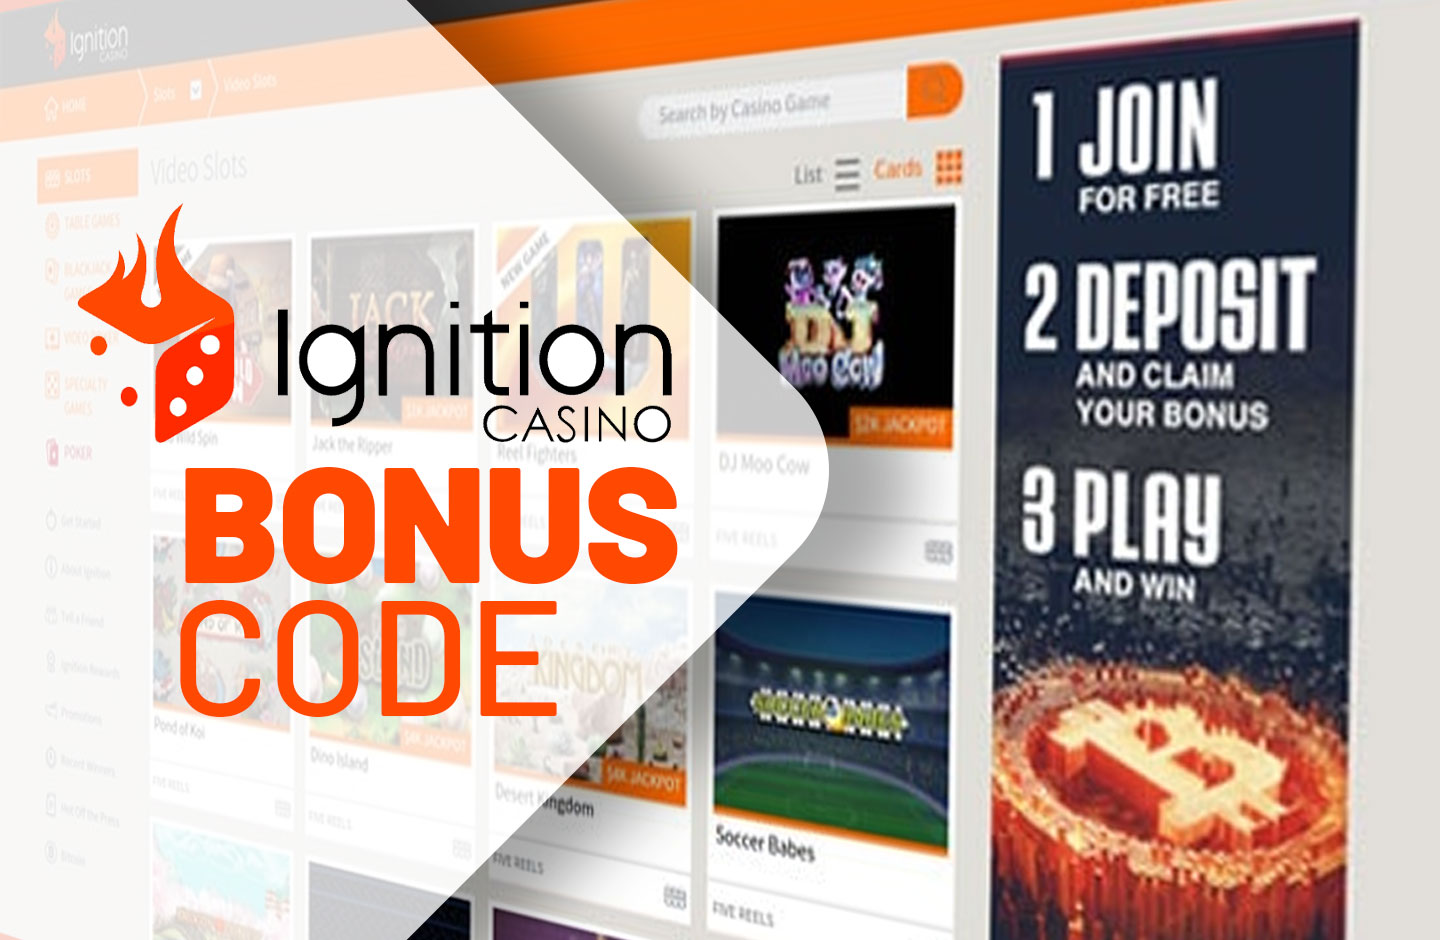 ignition casino no deposit bonus